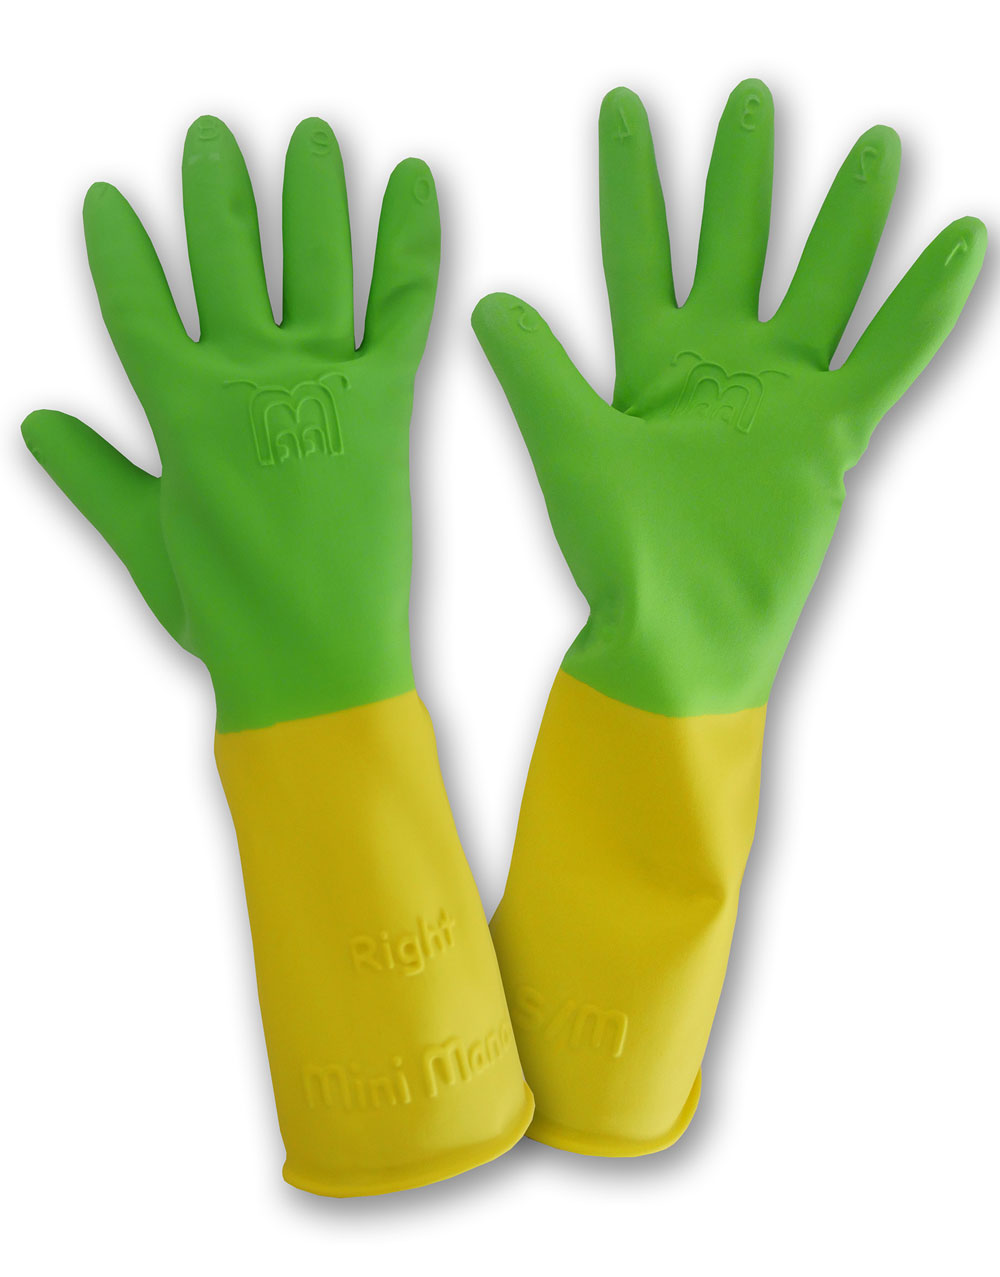 Gants de jardinage enfant imperméables latex vert MARGOT-ROSTAING-Taille 6-8  ans/Gants T6-8 enf étanche paume leash